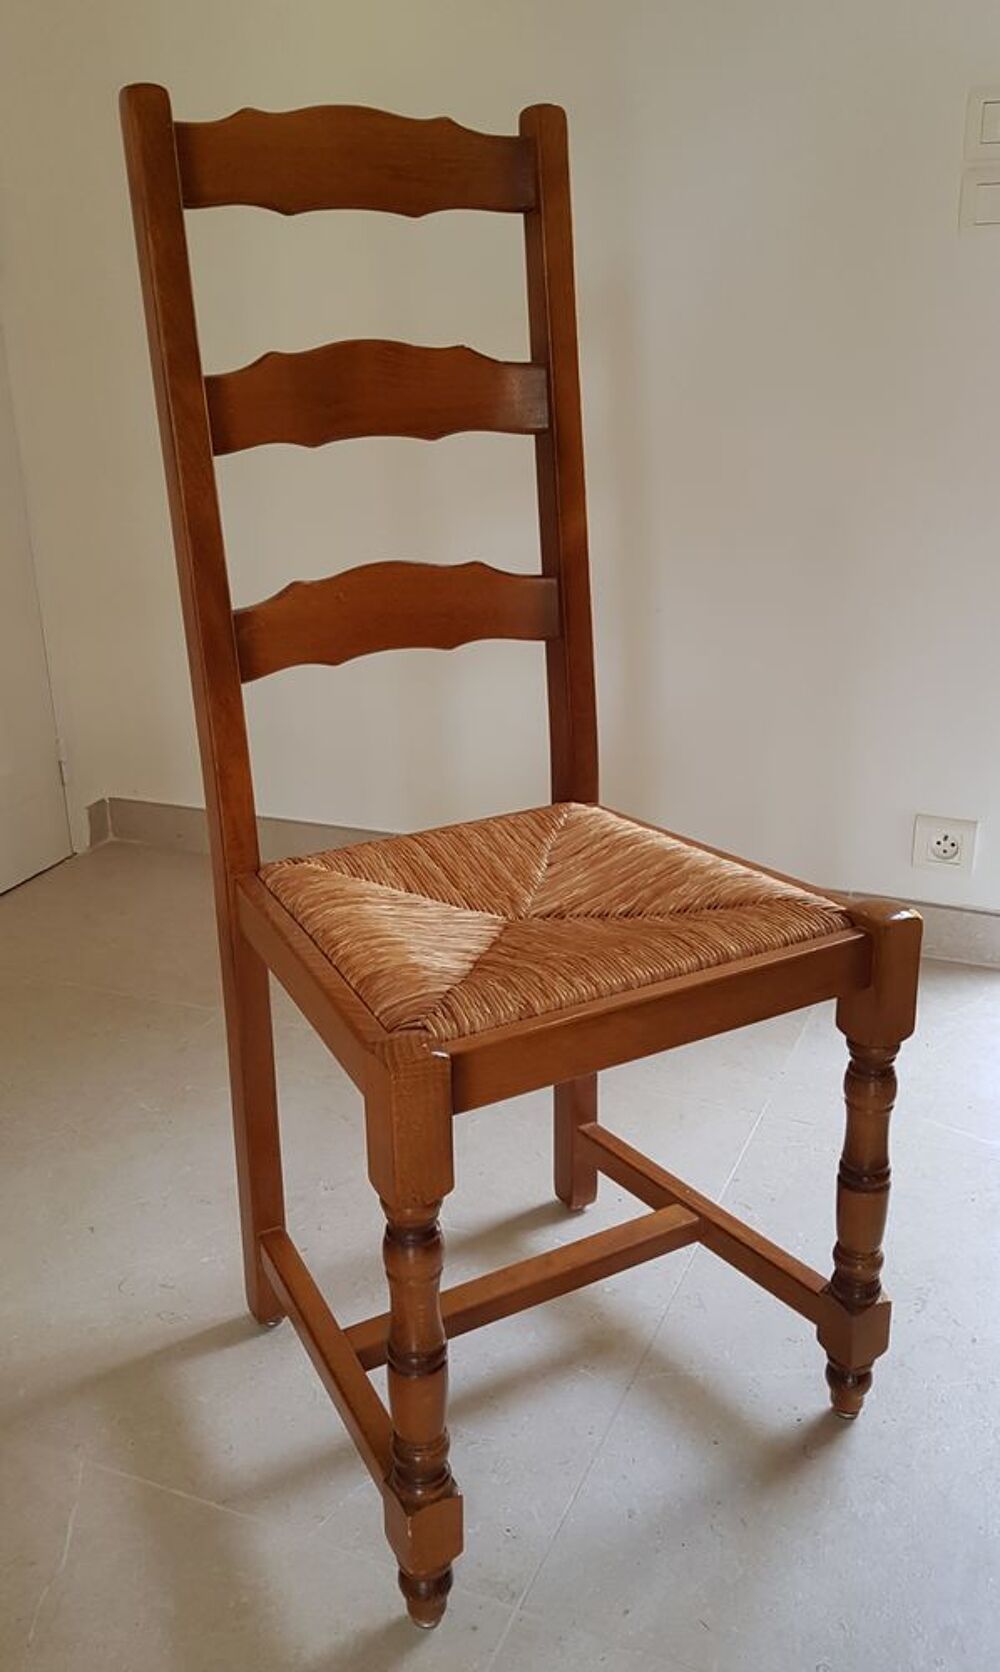 Table ronde 120 cm bois ch&ecirc;ne + 6 chaises h&ecirc;tre et paille Meubles